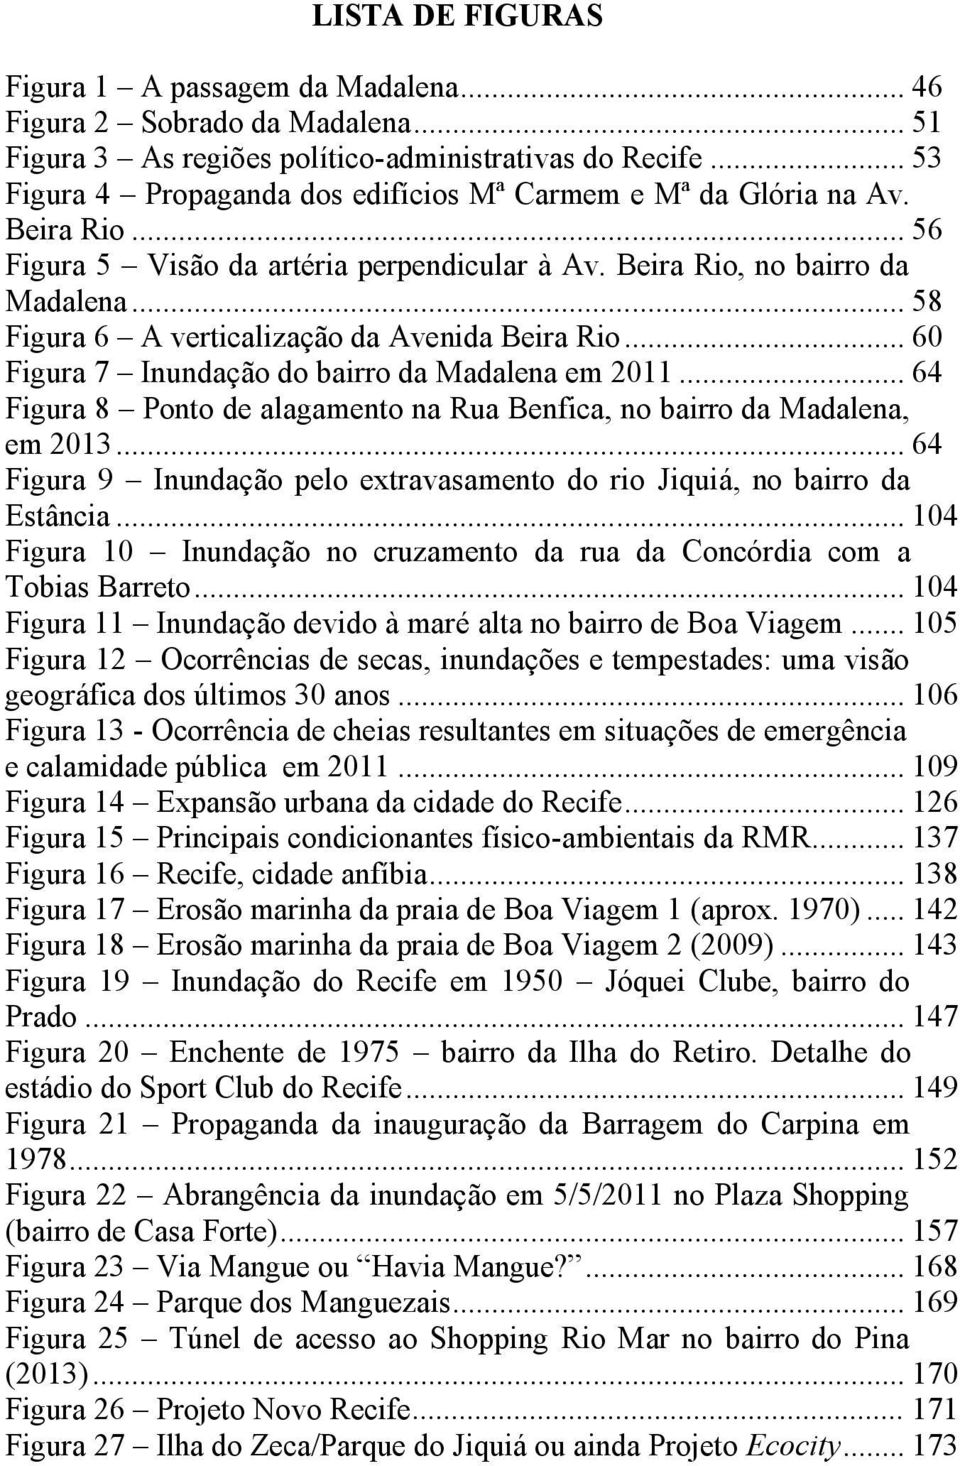 .. 58 Figura 6 A verticalização da Avenida Beira Rio... 60 Figura 7 Inundação do bairro da Madalena em 2011... 64 Figura 8 Ponto de alagamento na Rua Benfica, no bairro da Madalena, em 2013.